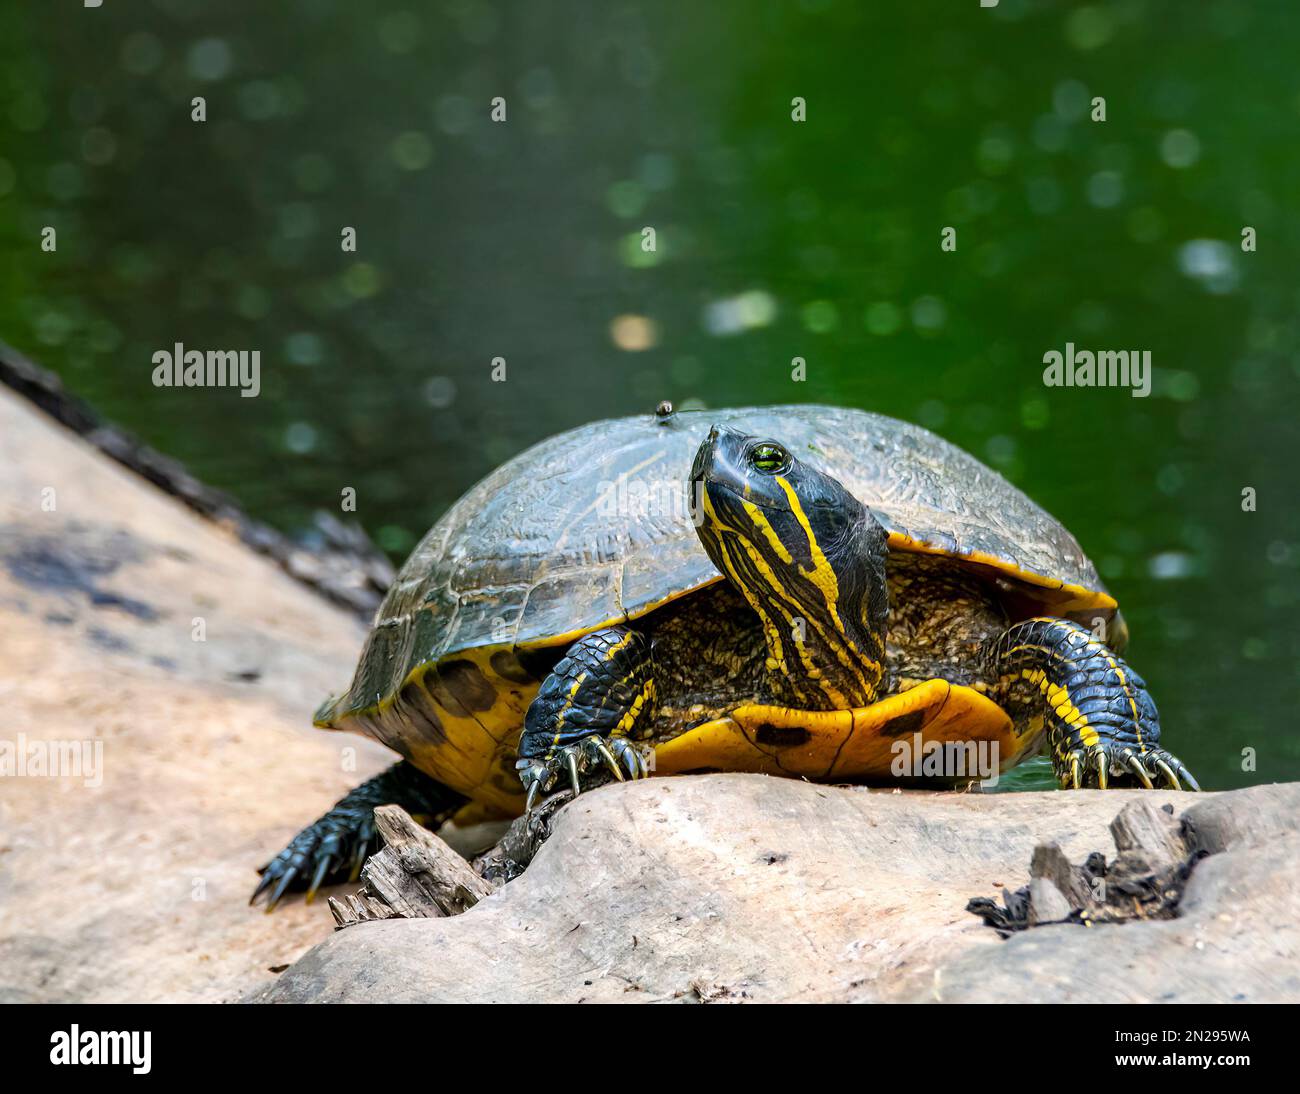 Bemalter Schildkrötenkopf aus der Nähe, der nach oben blickt und Details zeigt. Stockfoto